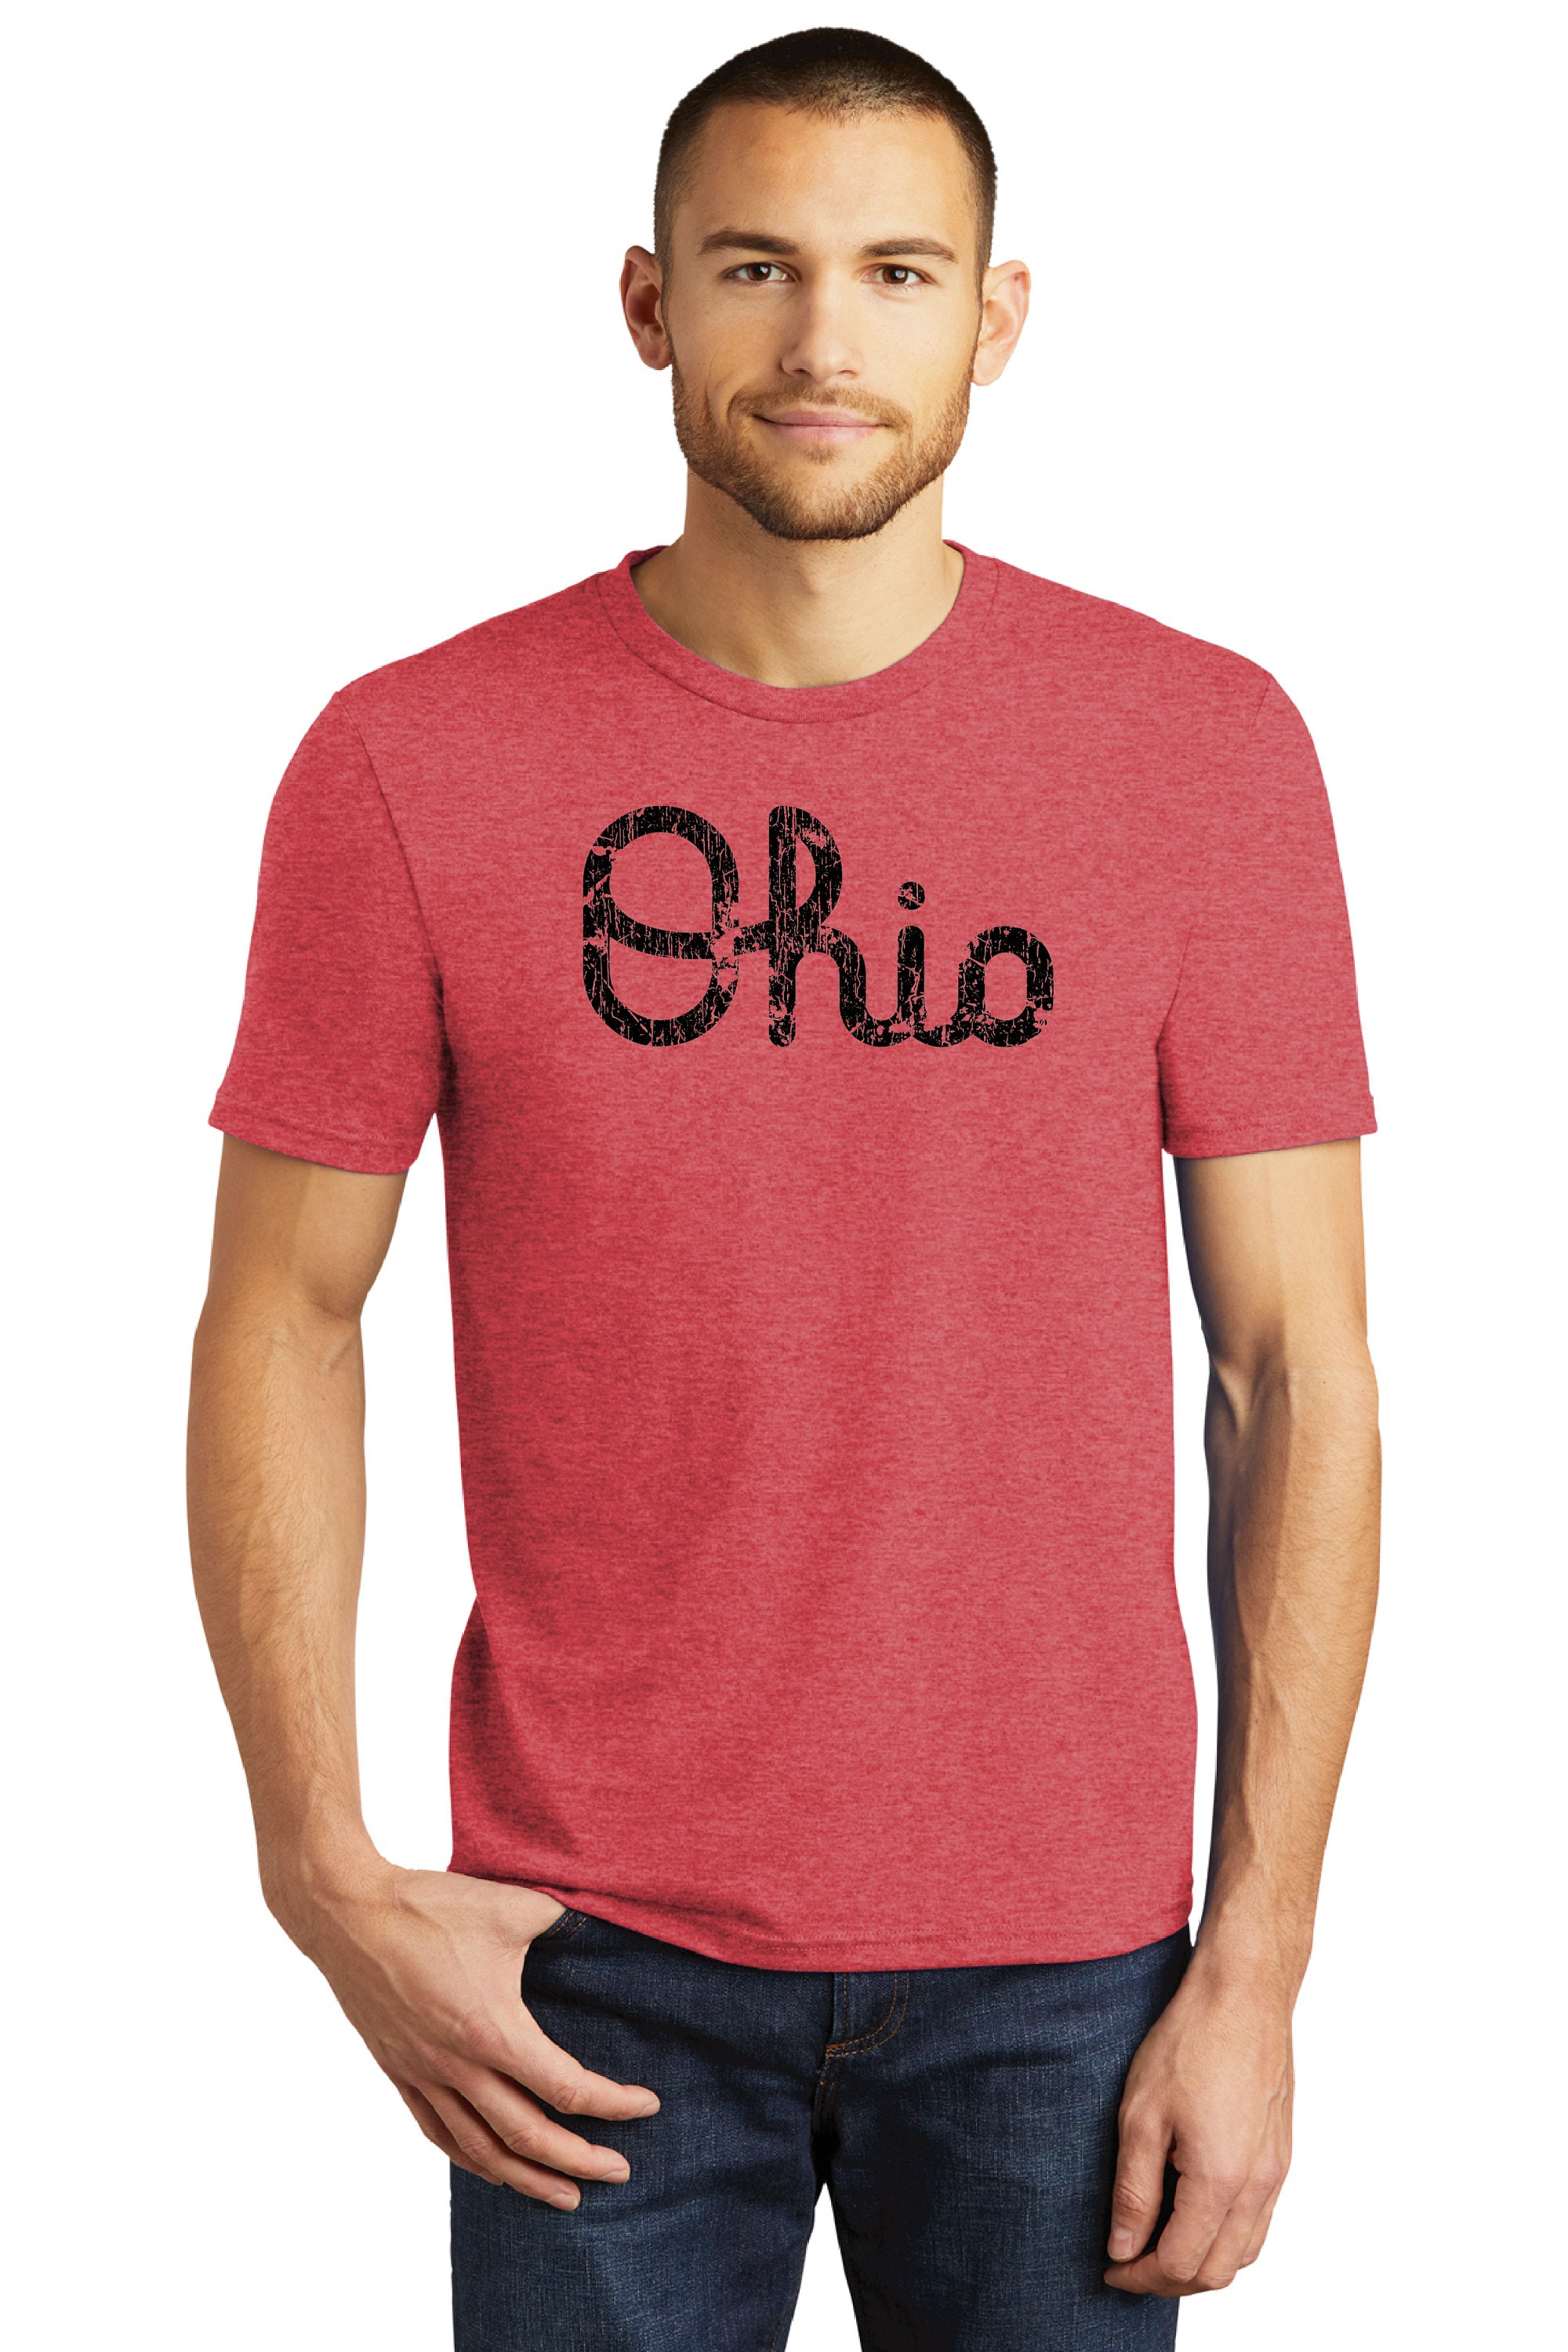 Ohio State Buckeyes Grandparent University T-Shirt